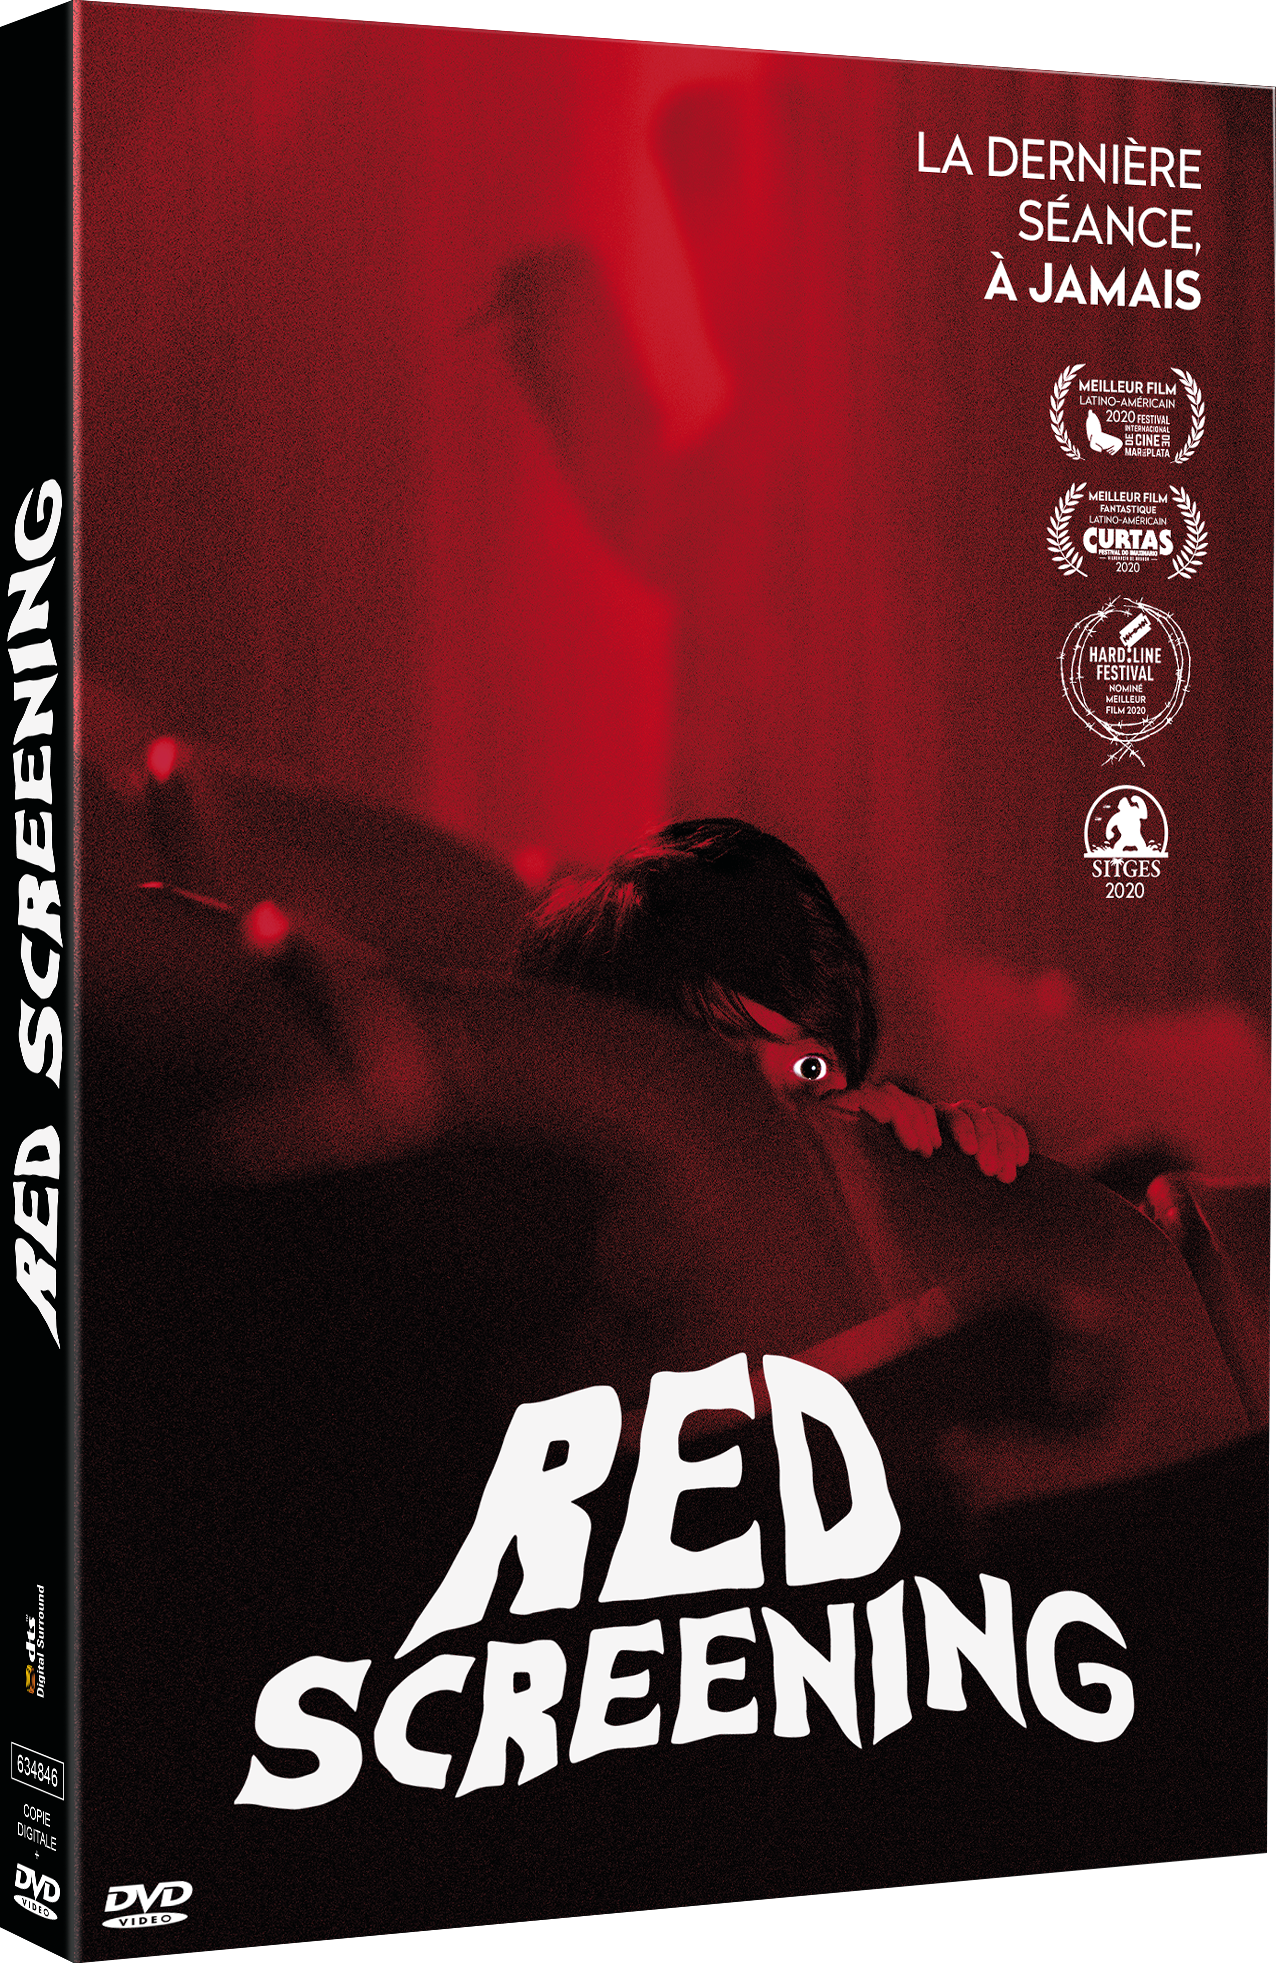 RED SCREENING - DVD